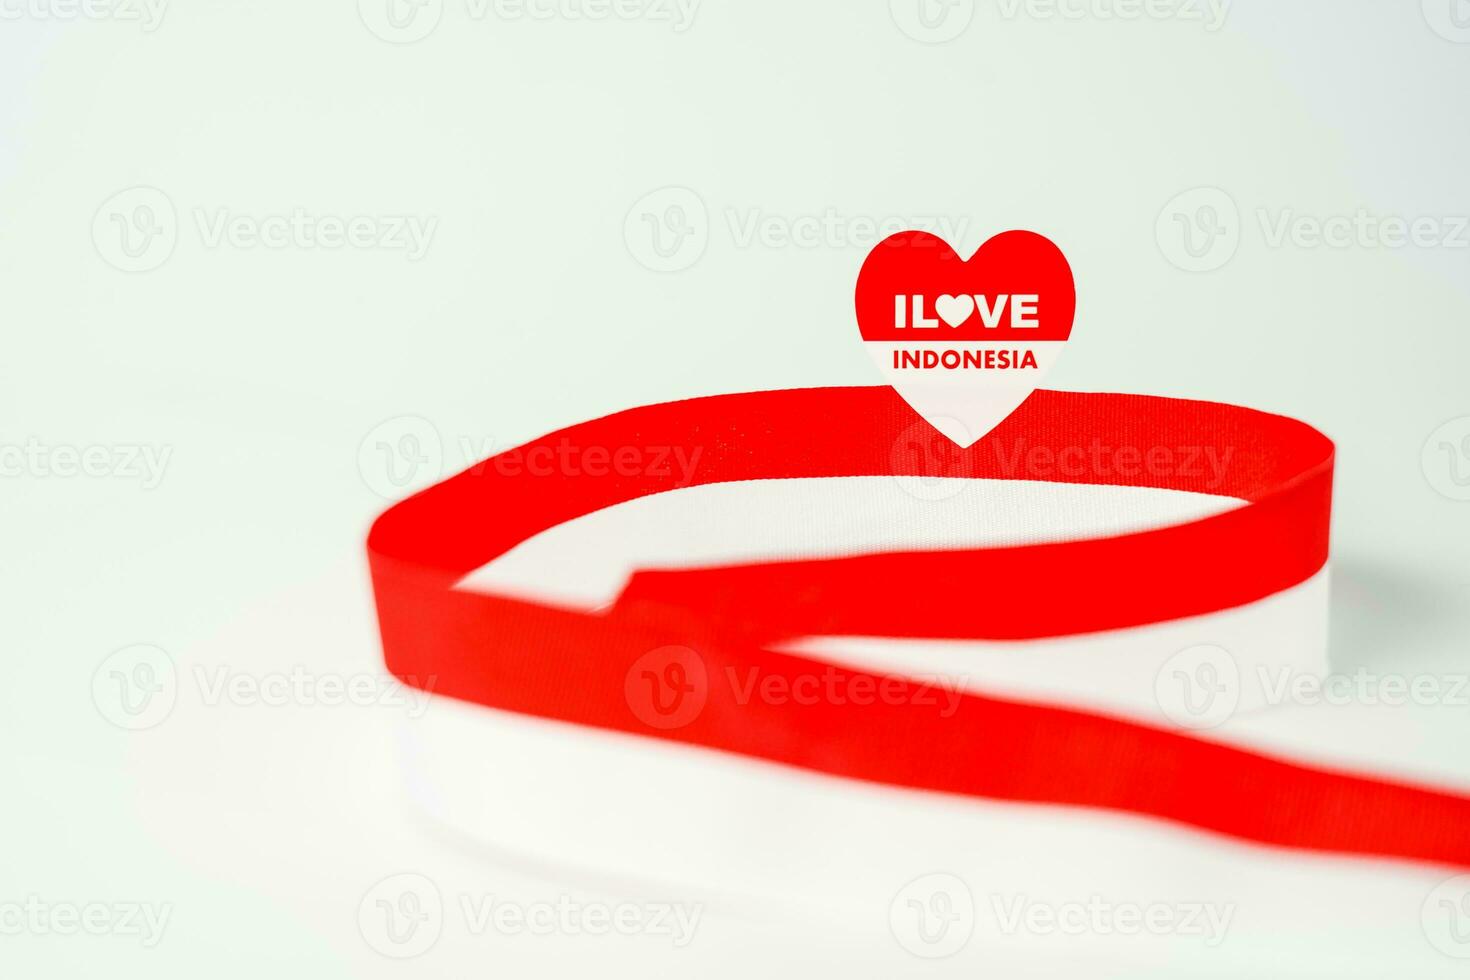 fita, vermelho e branco bandeira do Indonésia independência dia agosto 17, stiker Eu amor Indonésia, isolado em branco fundo foto